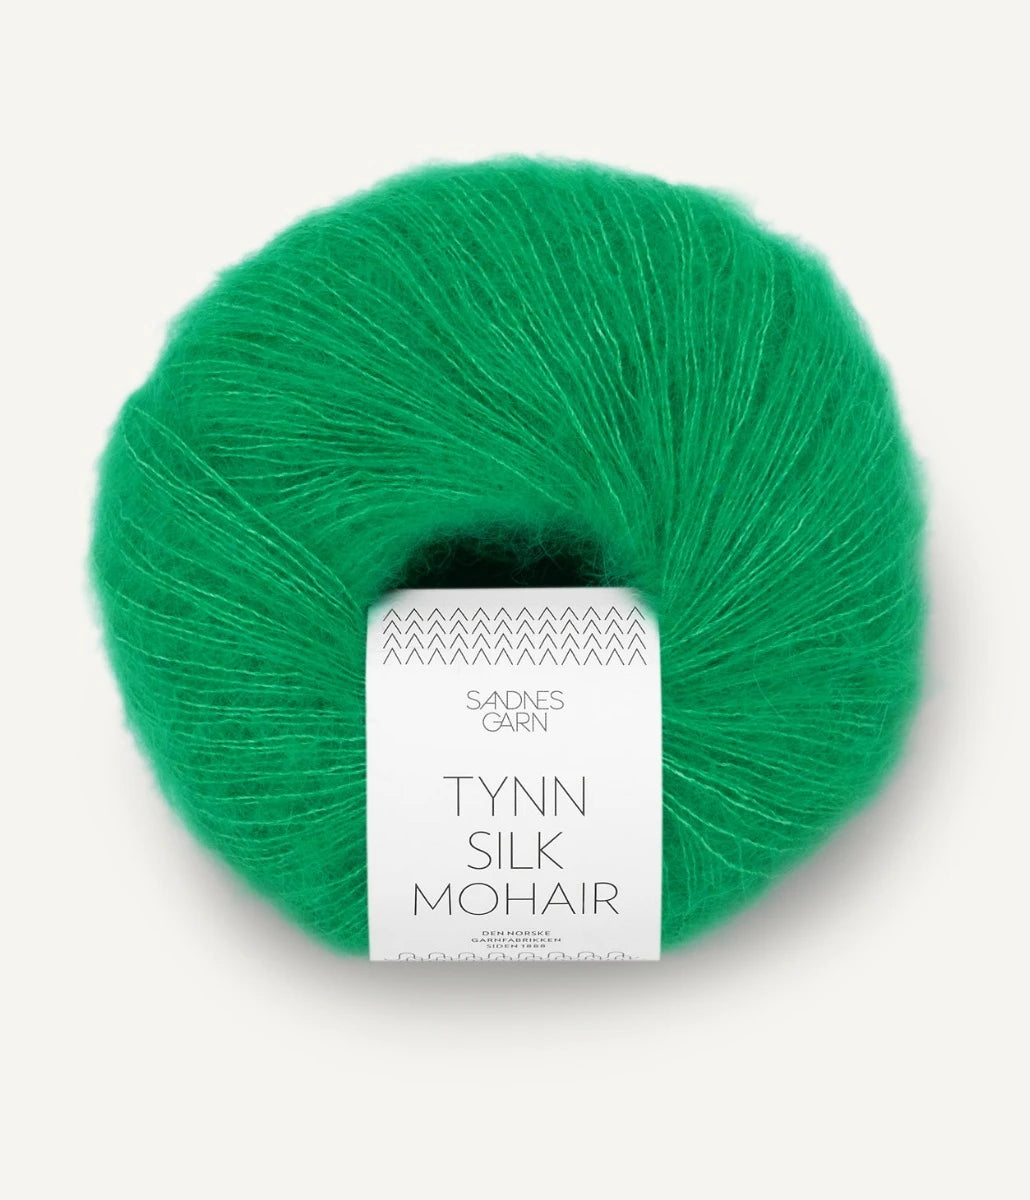 Kuvassa on Sandnes Garn Tynn Silk Mohair -lanka (yarn) värissä Jelly Bean Green.